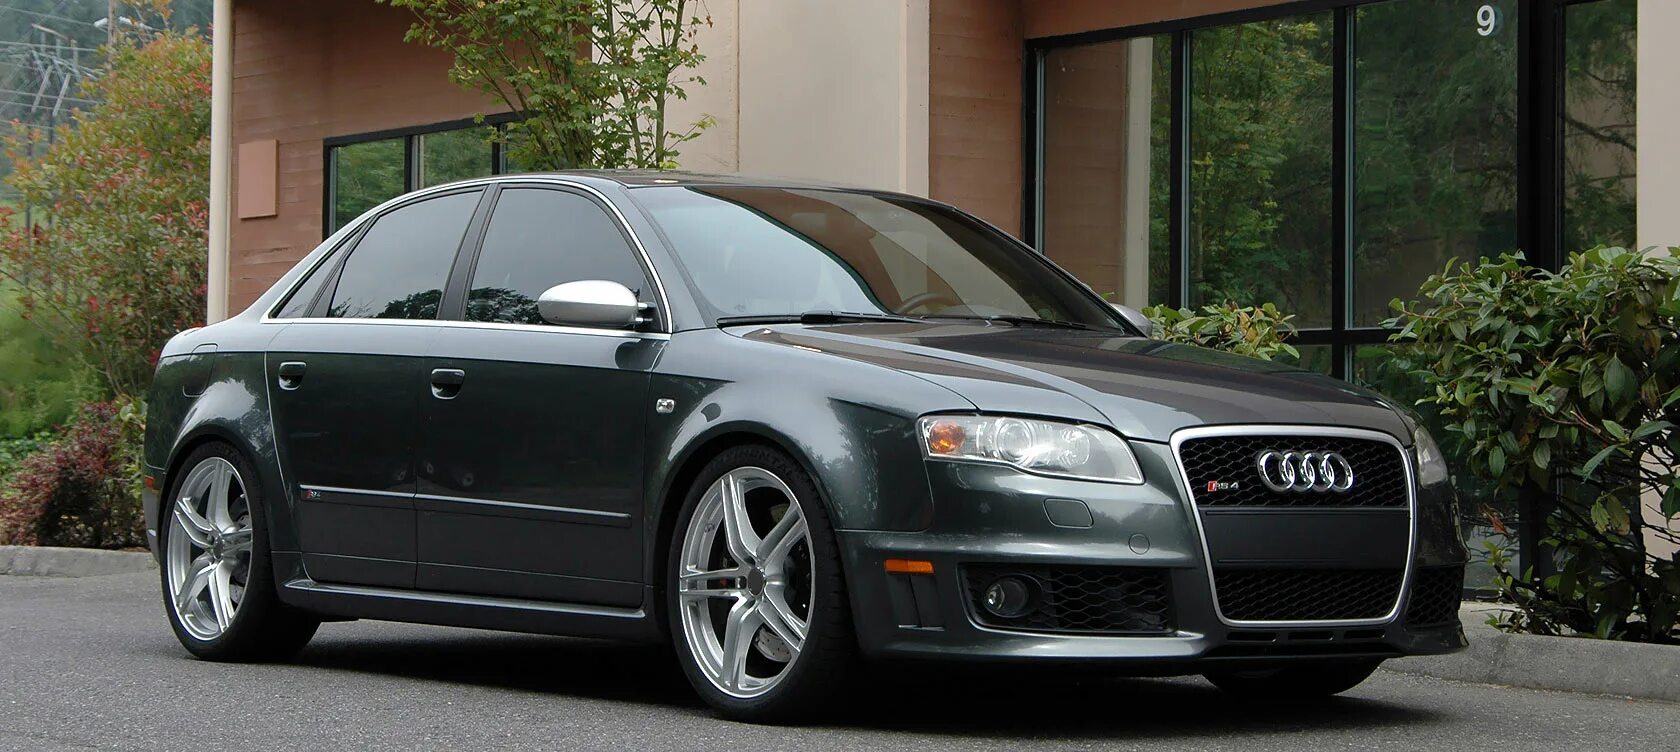 Ауди а4 размер шин. Audi a4 b7. Audi rs4 b6. Audi a4 b7 черные диски. Audi s4 b7 Grey.